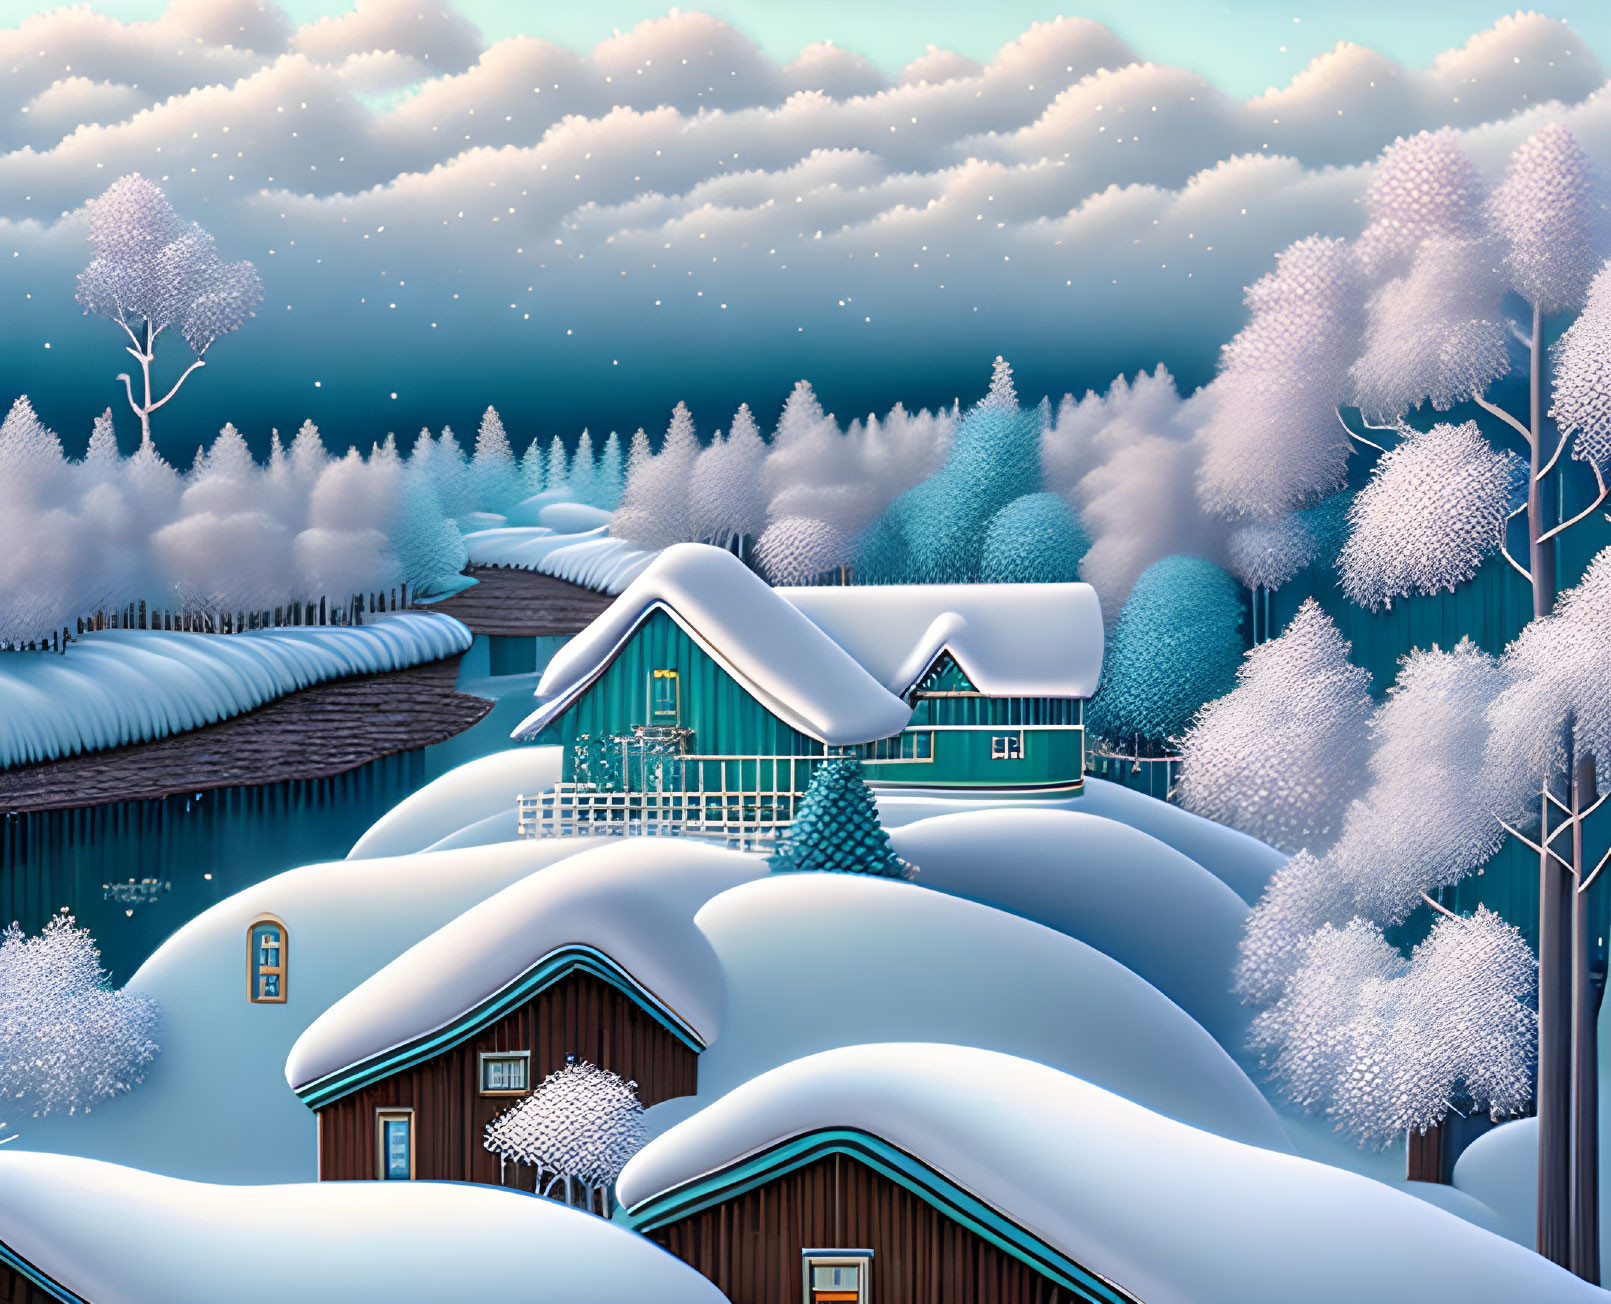 Mooi sneeuw landschap met huisjes.